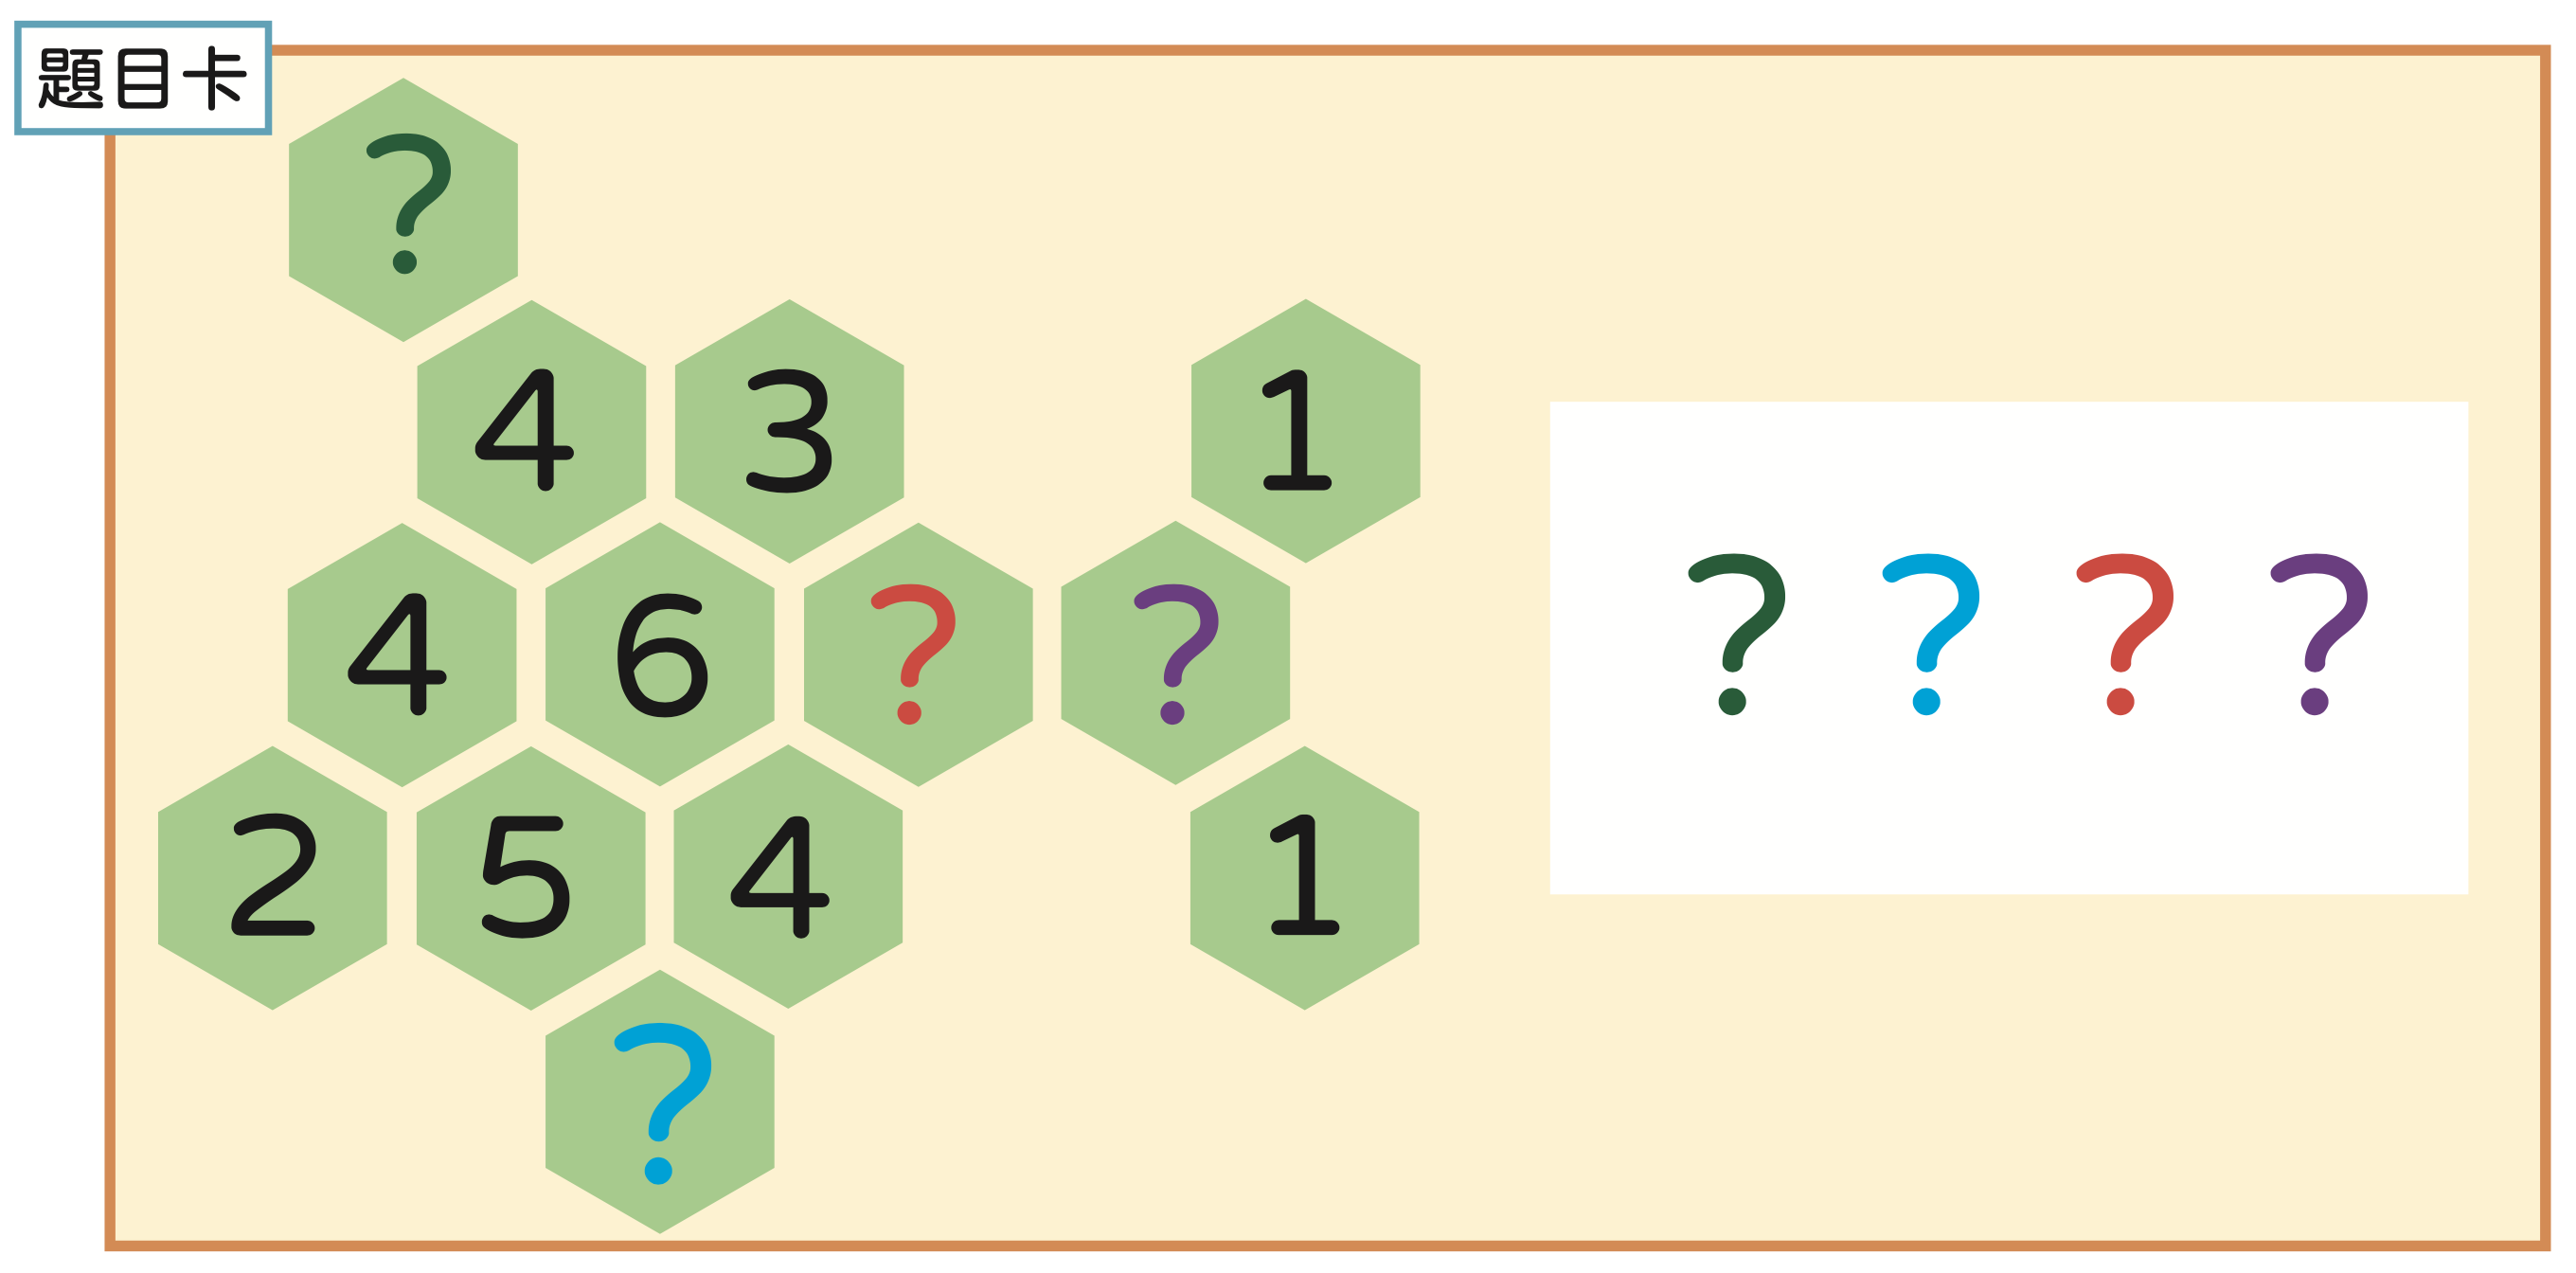 解謎遊戲設計 數學遊戲題目5